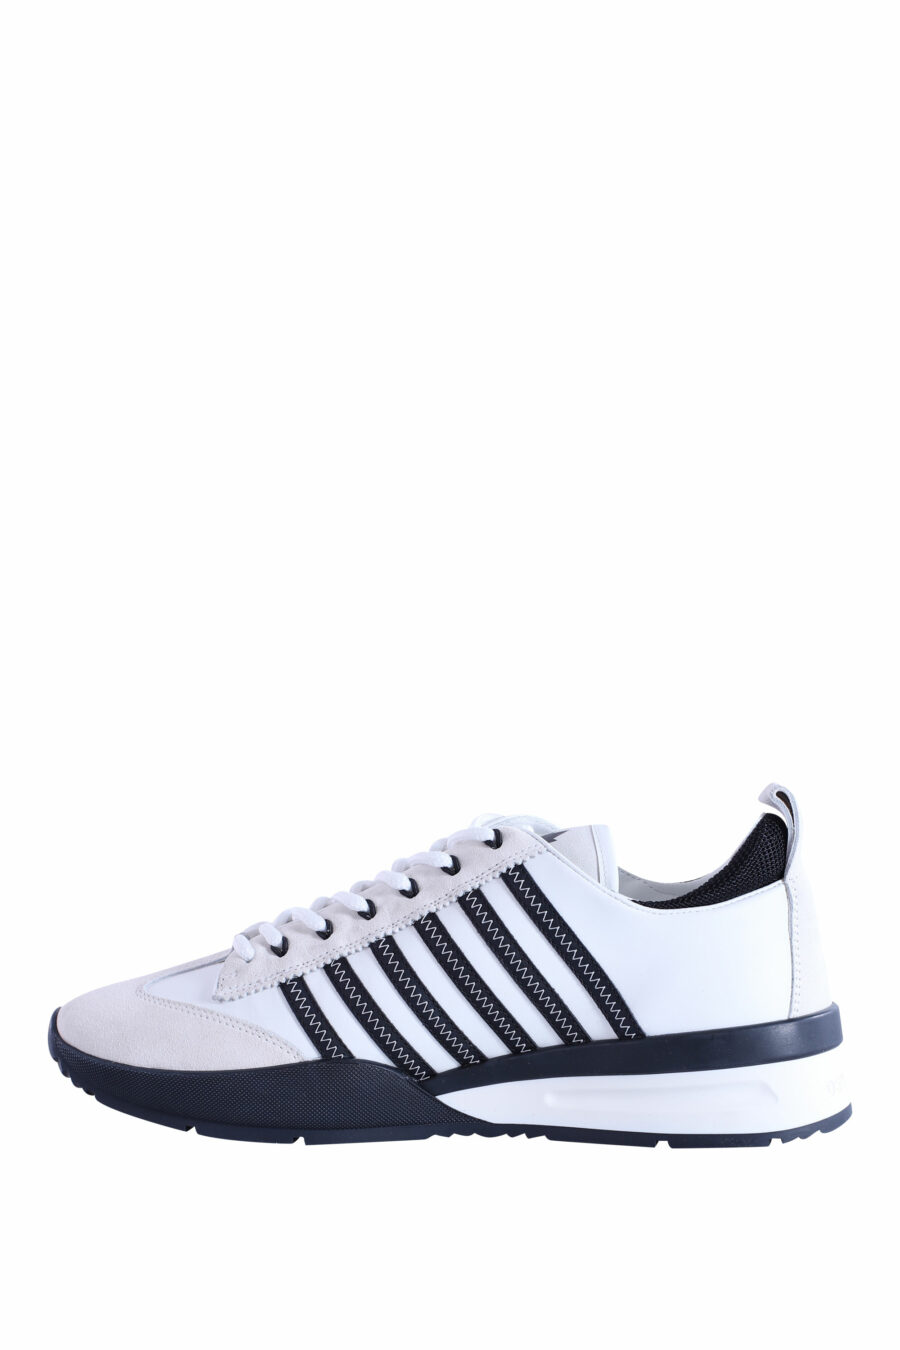 Zapatillas blancas y negras con lineas azules - IMG 2964